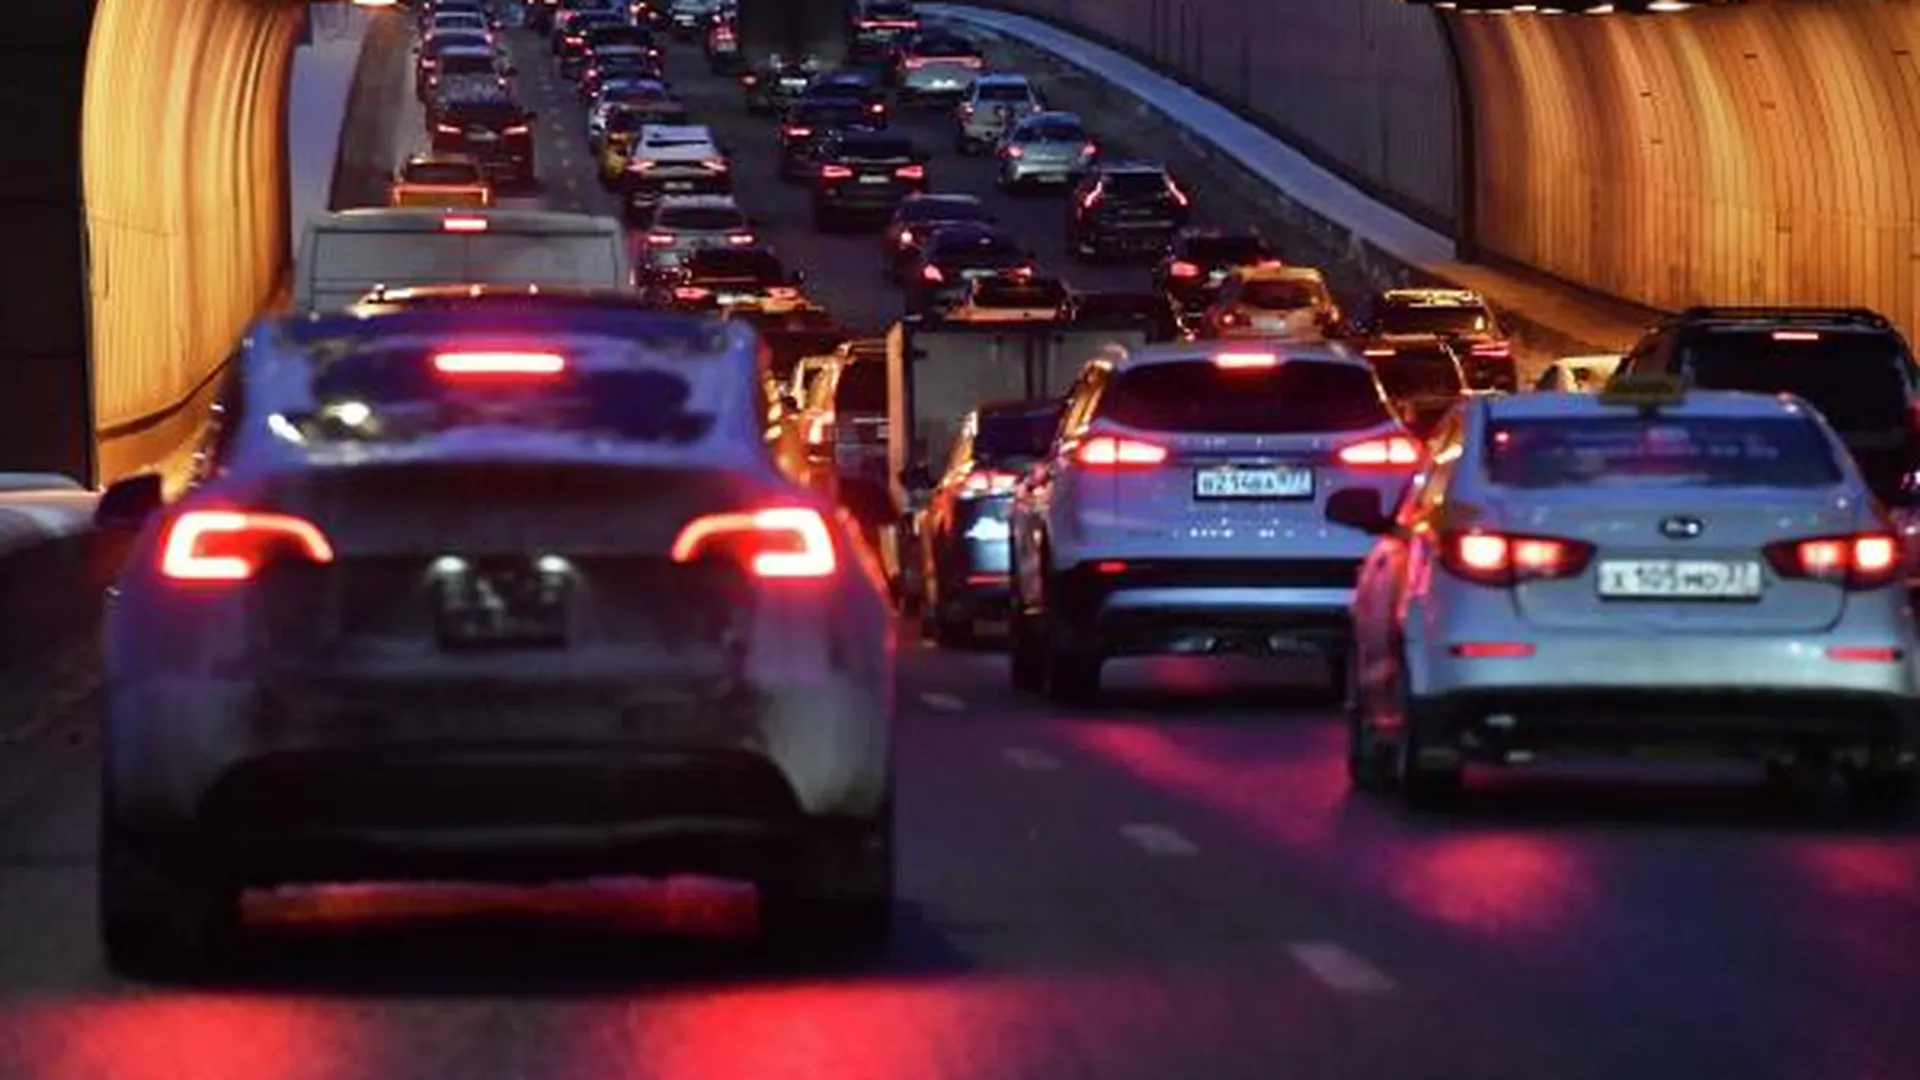 Количество аварий на дорогах в Москве за 10 лет снизилось почти на треть